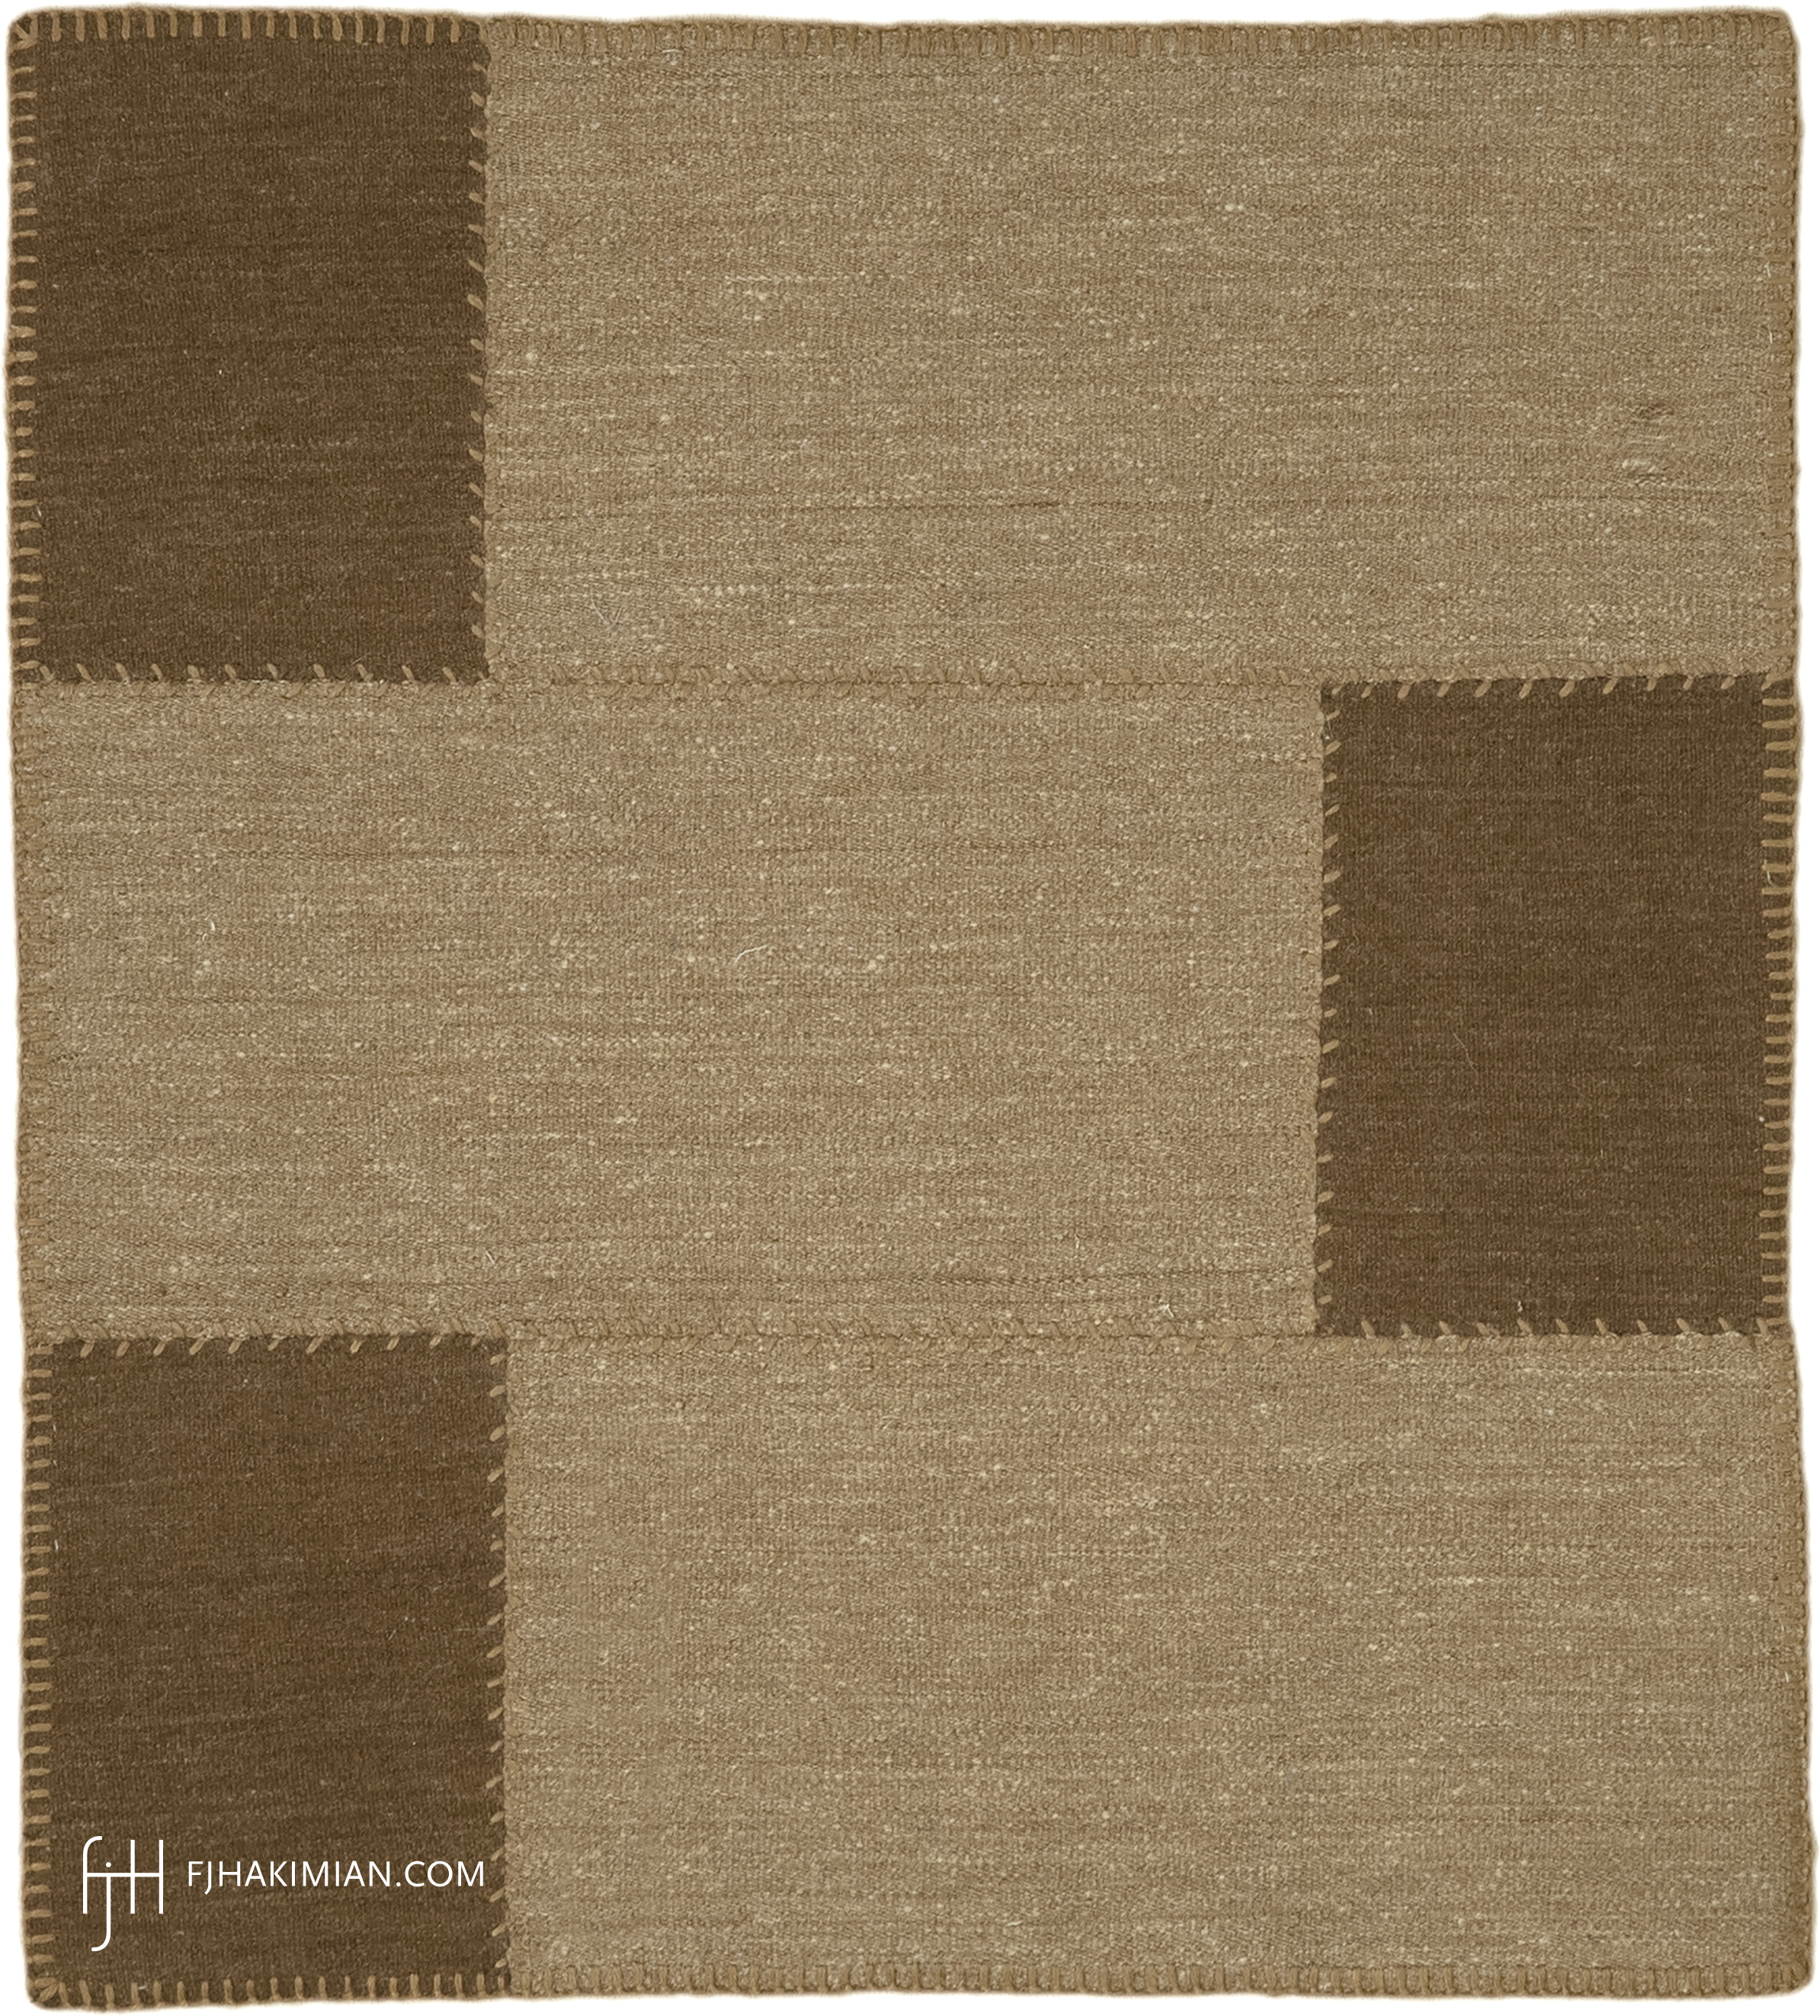 FJ Hakimian | 77159 | Custom Carpet